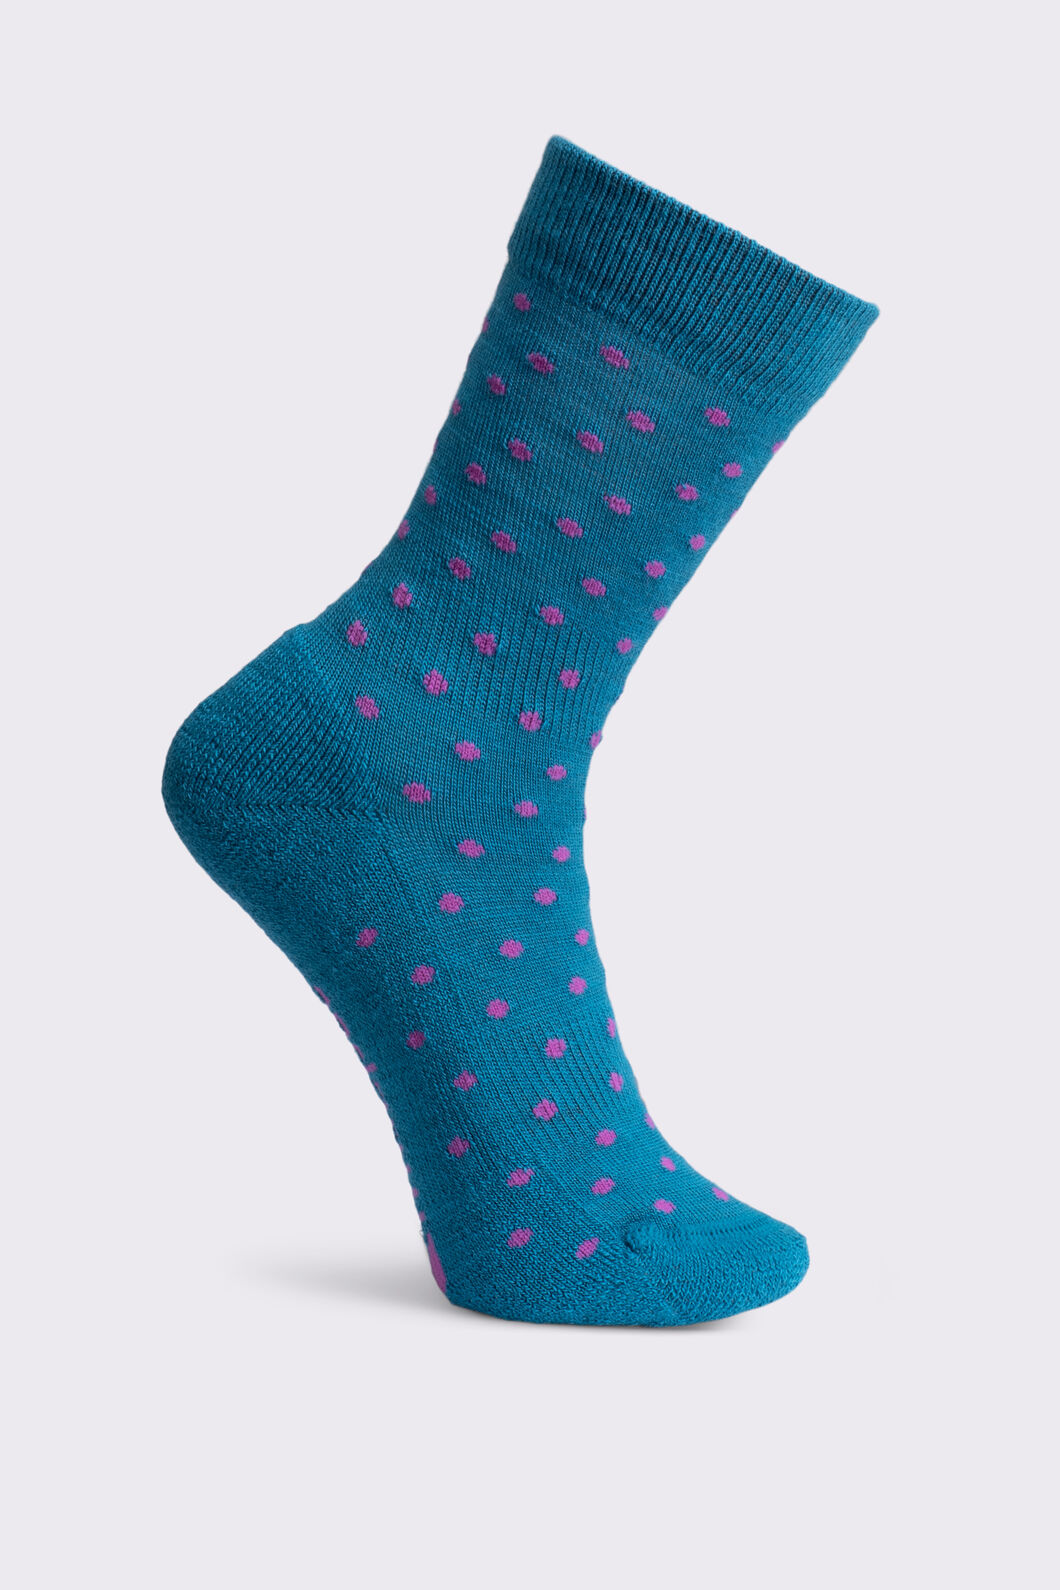 Macpac Kids' Footprint Sock, Spring Crocus/Green-Blue Polka, hi-res